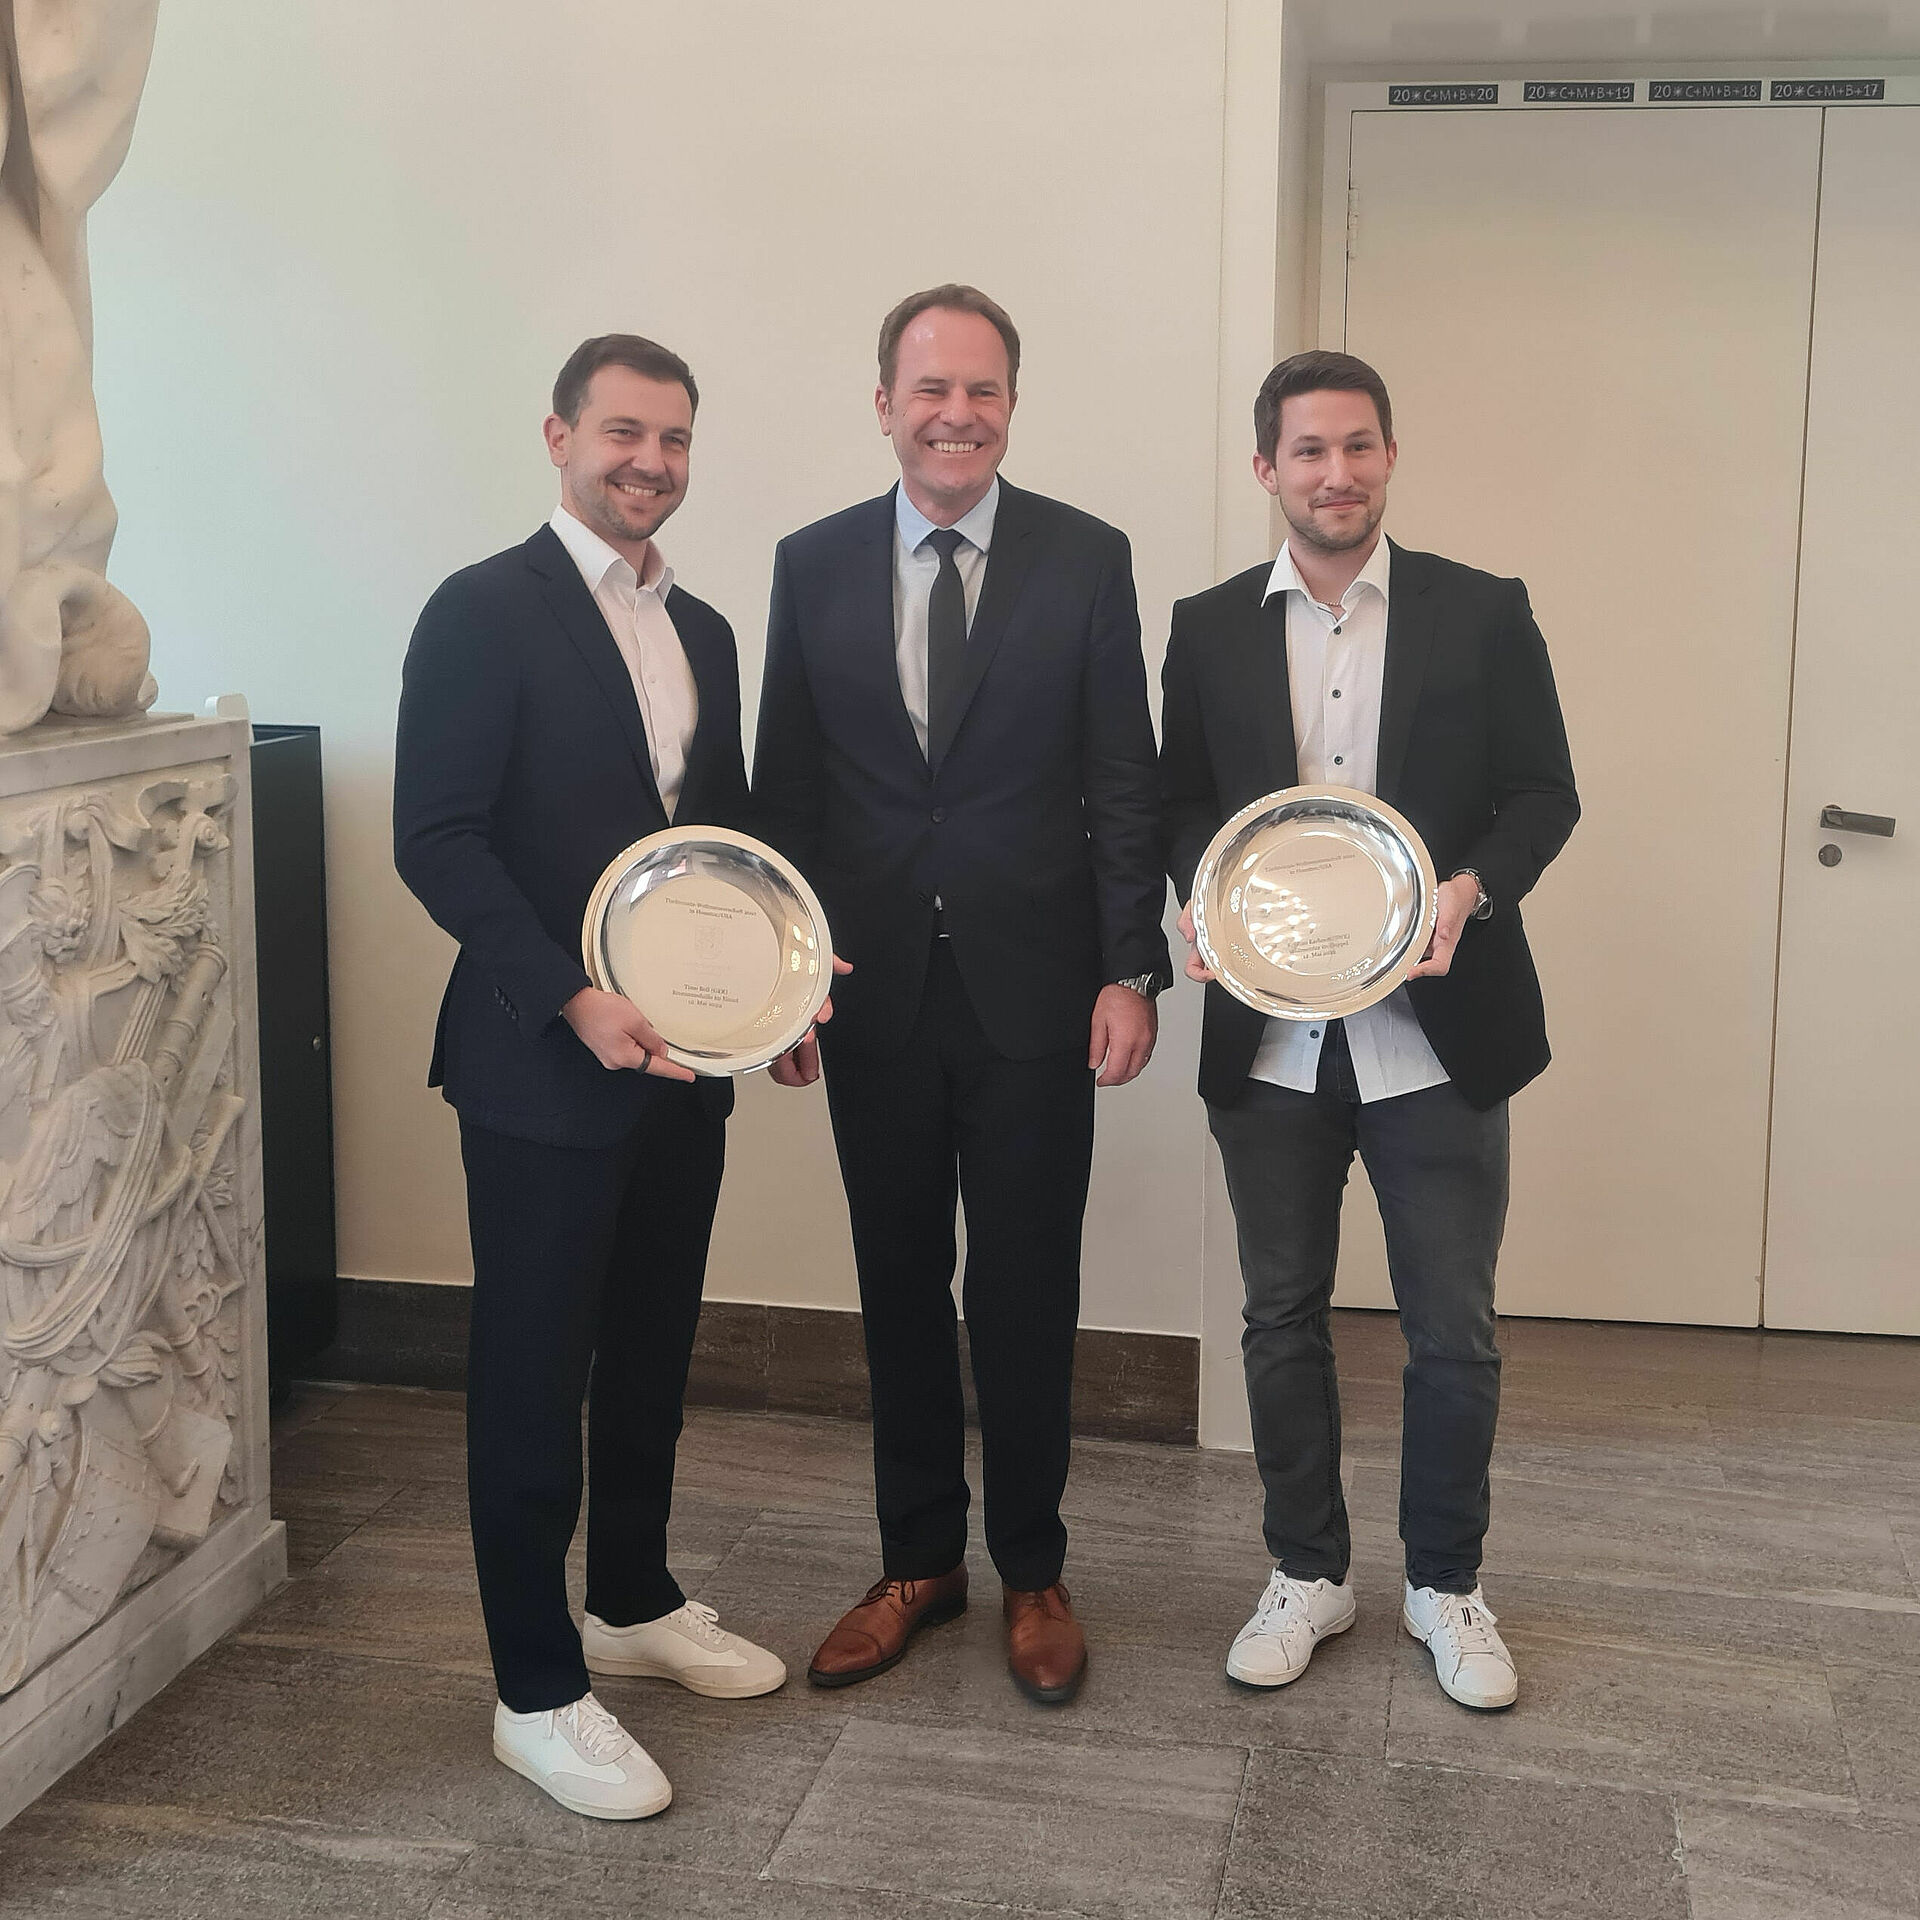 Timo Boll und Kristian Karlsson werden für ihre Erfolge bei der Weltmeisterschaft 2021 in Houston von Oberbürgermeister Keller geehrt